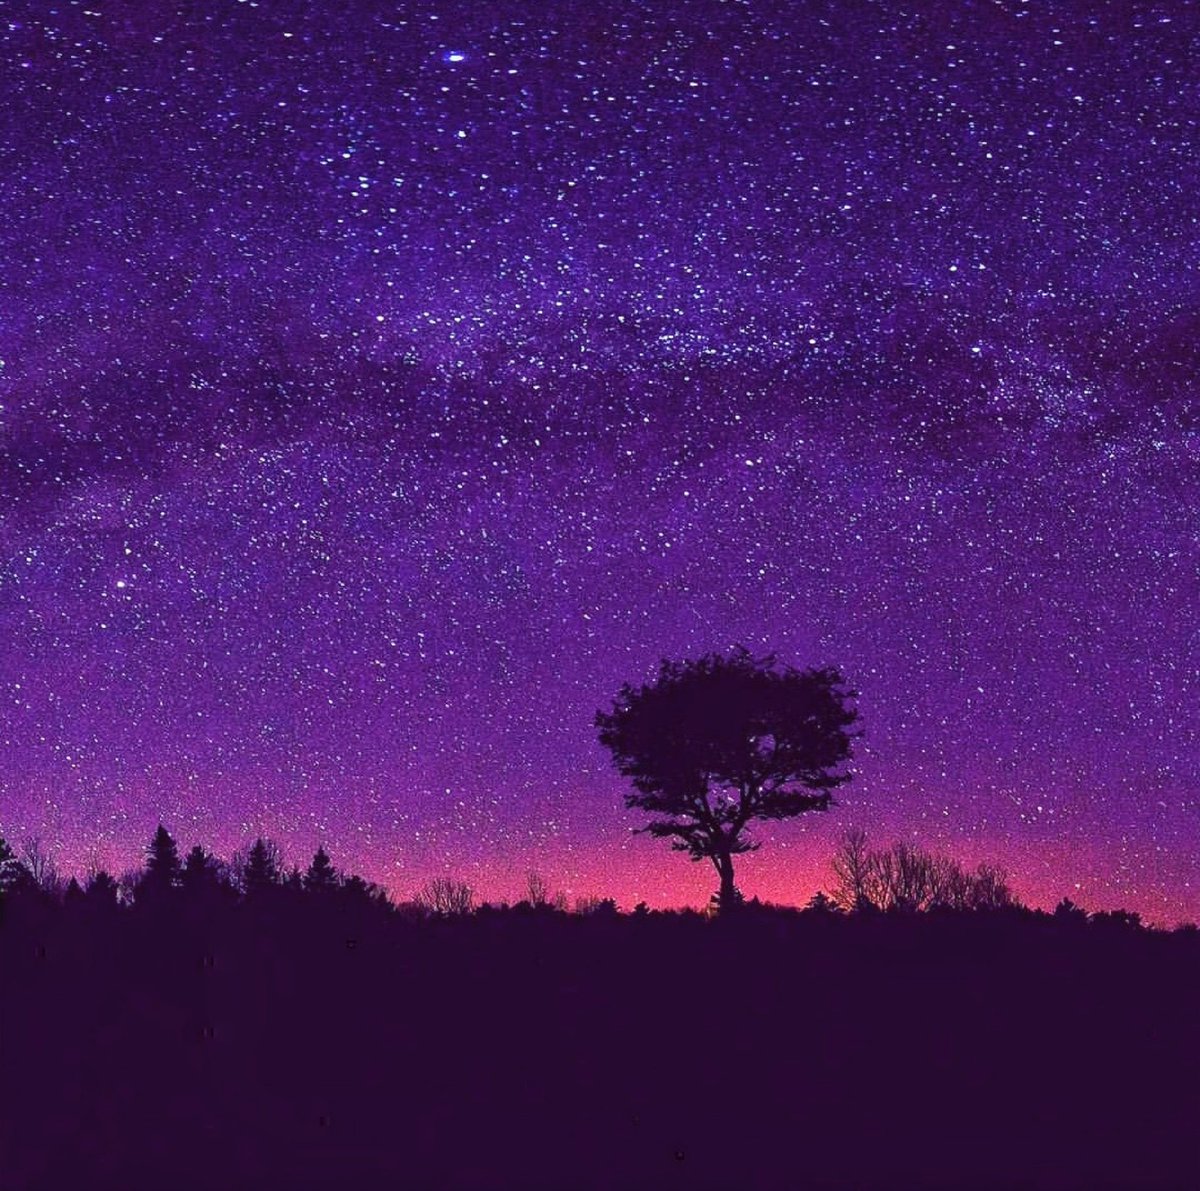 Toru Photo Movie 紫のグラデーションで彩ってみました この色合いは不思議な世界観を感じます 星空 星景 T Co Xkdfqocne1 Twitter